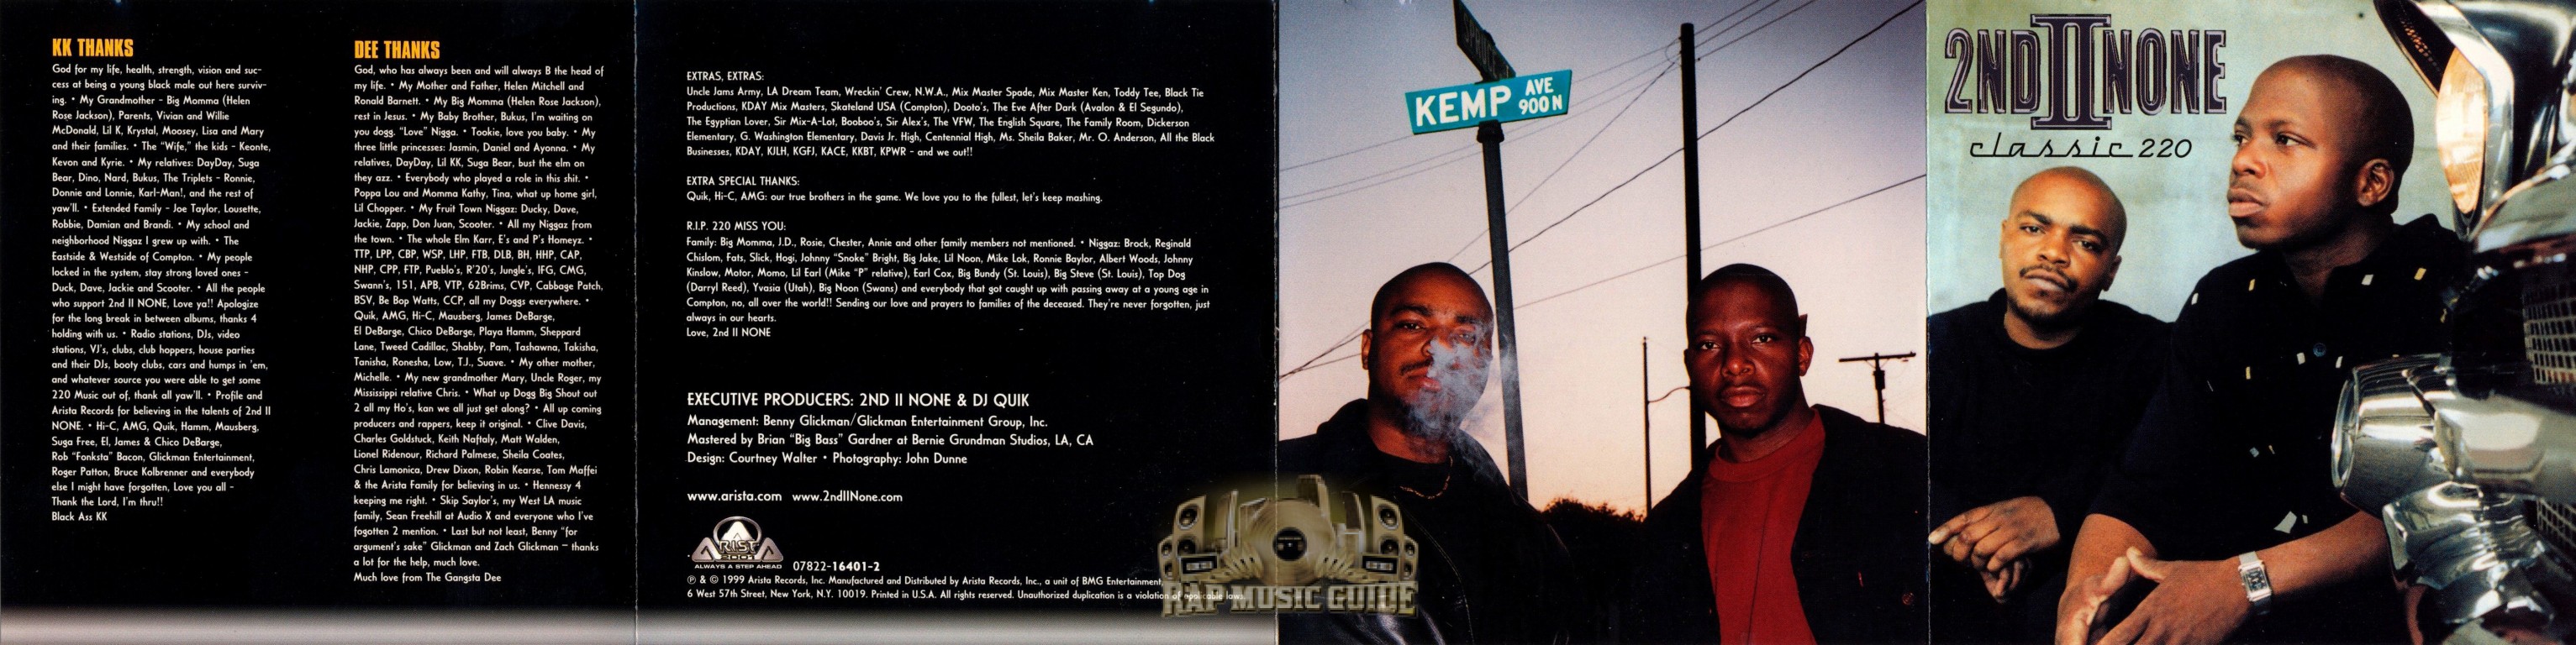 2nd II None - Classic 220: CD | Rap Music Guide